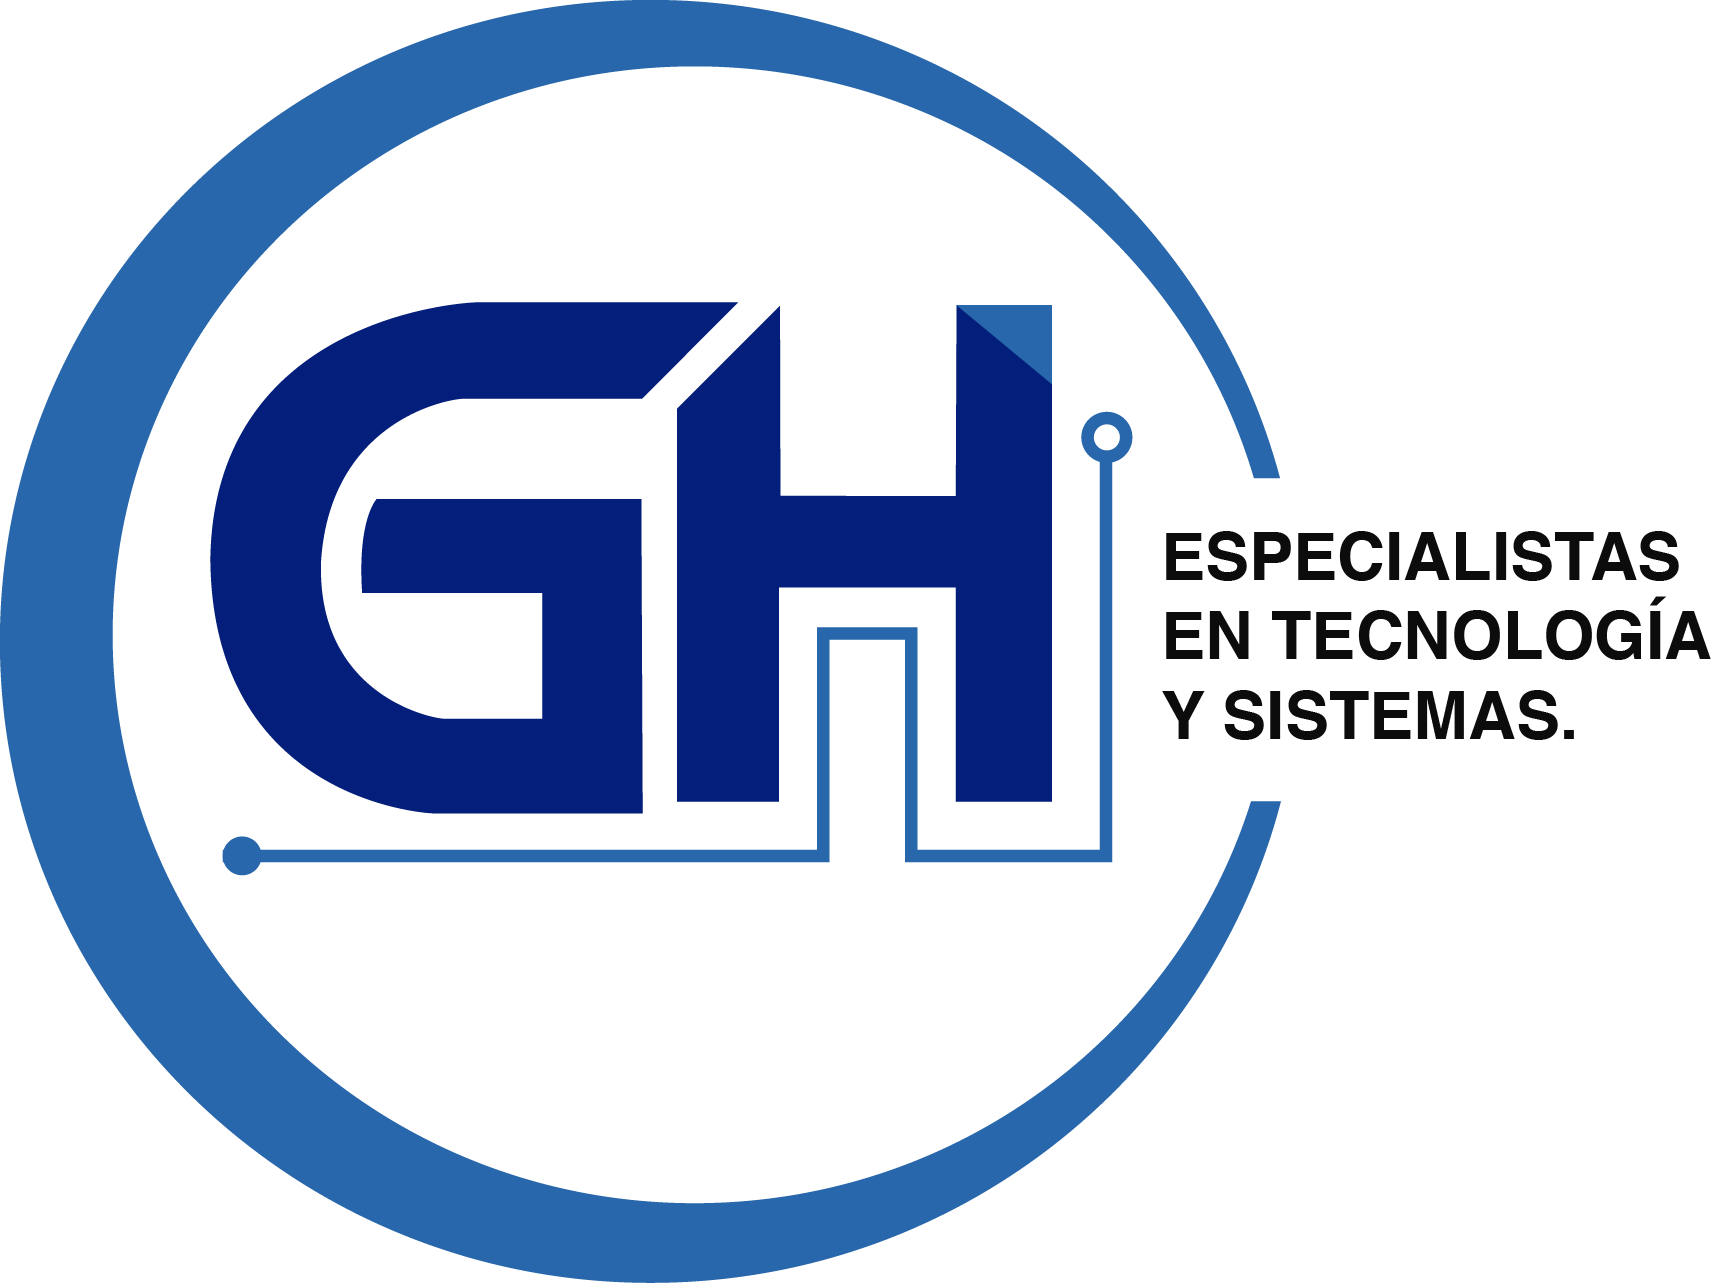 GH sistemas